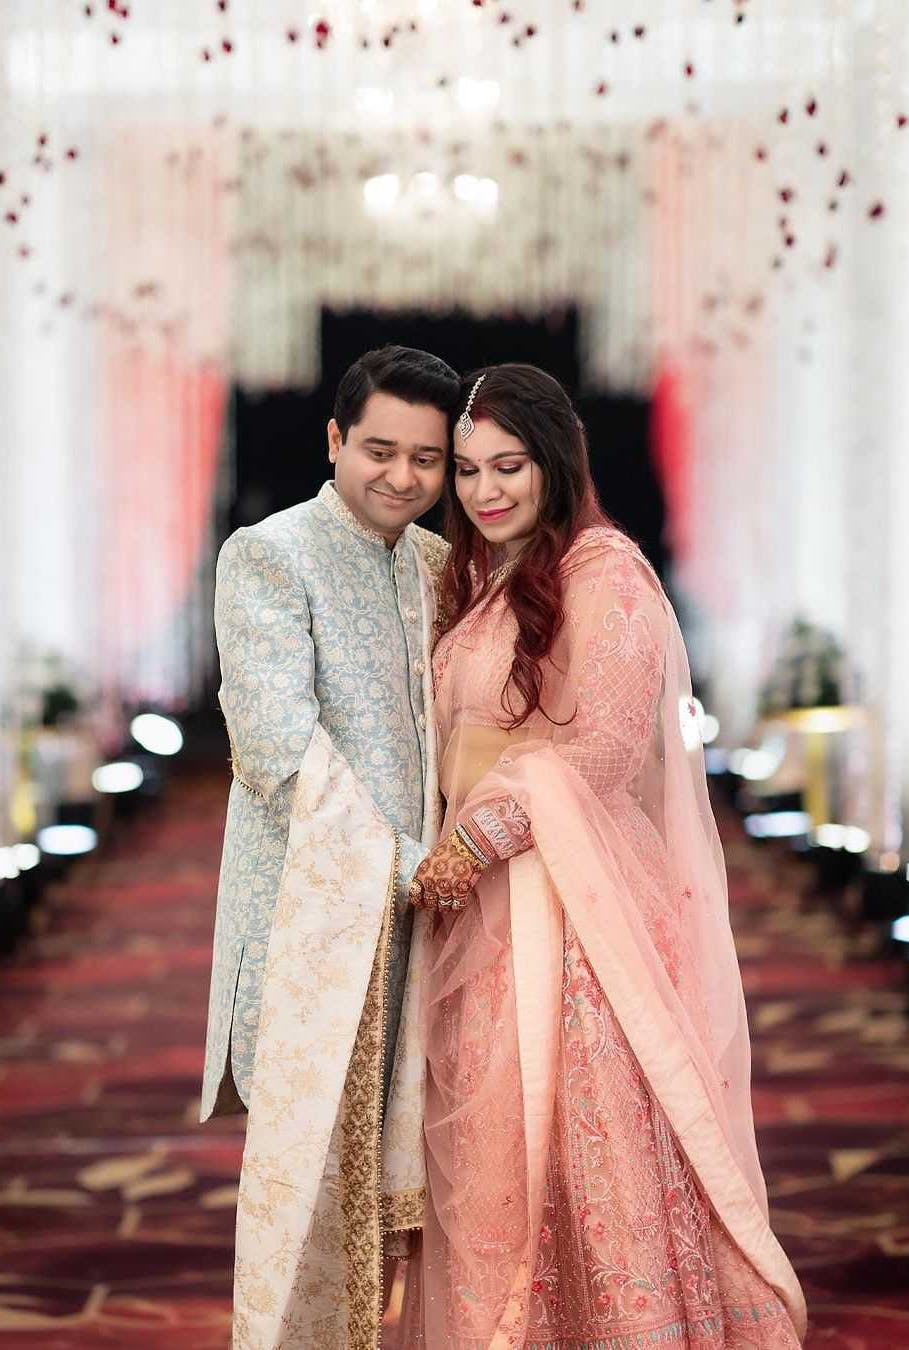 Bihari wedding couple pic